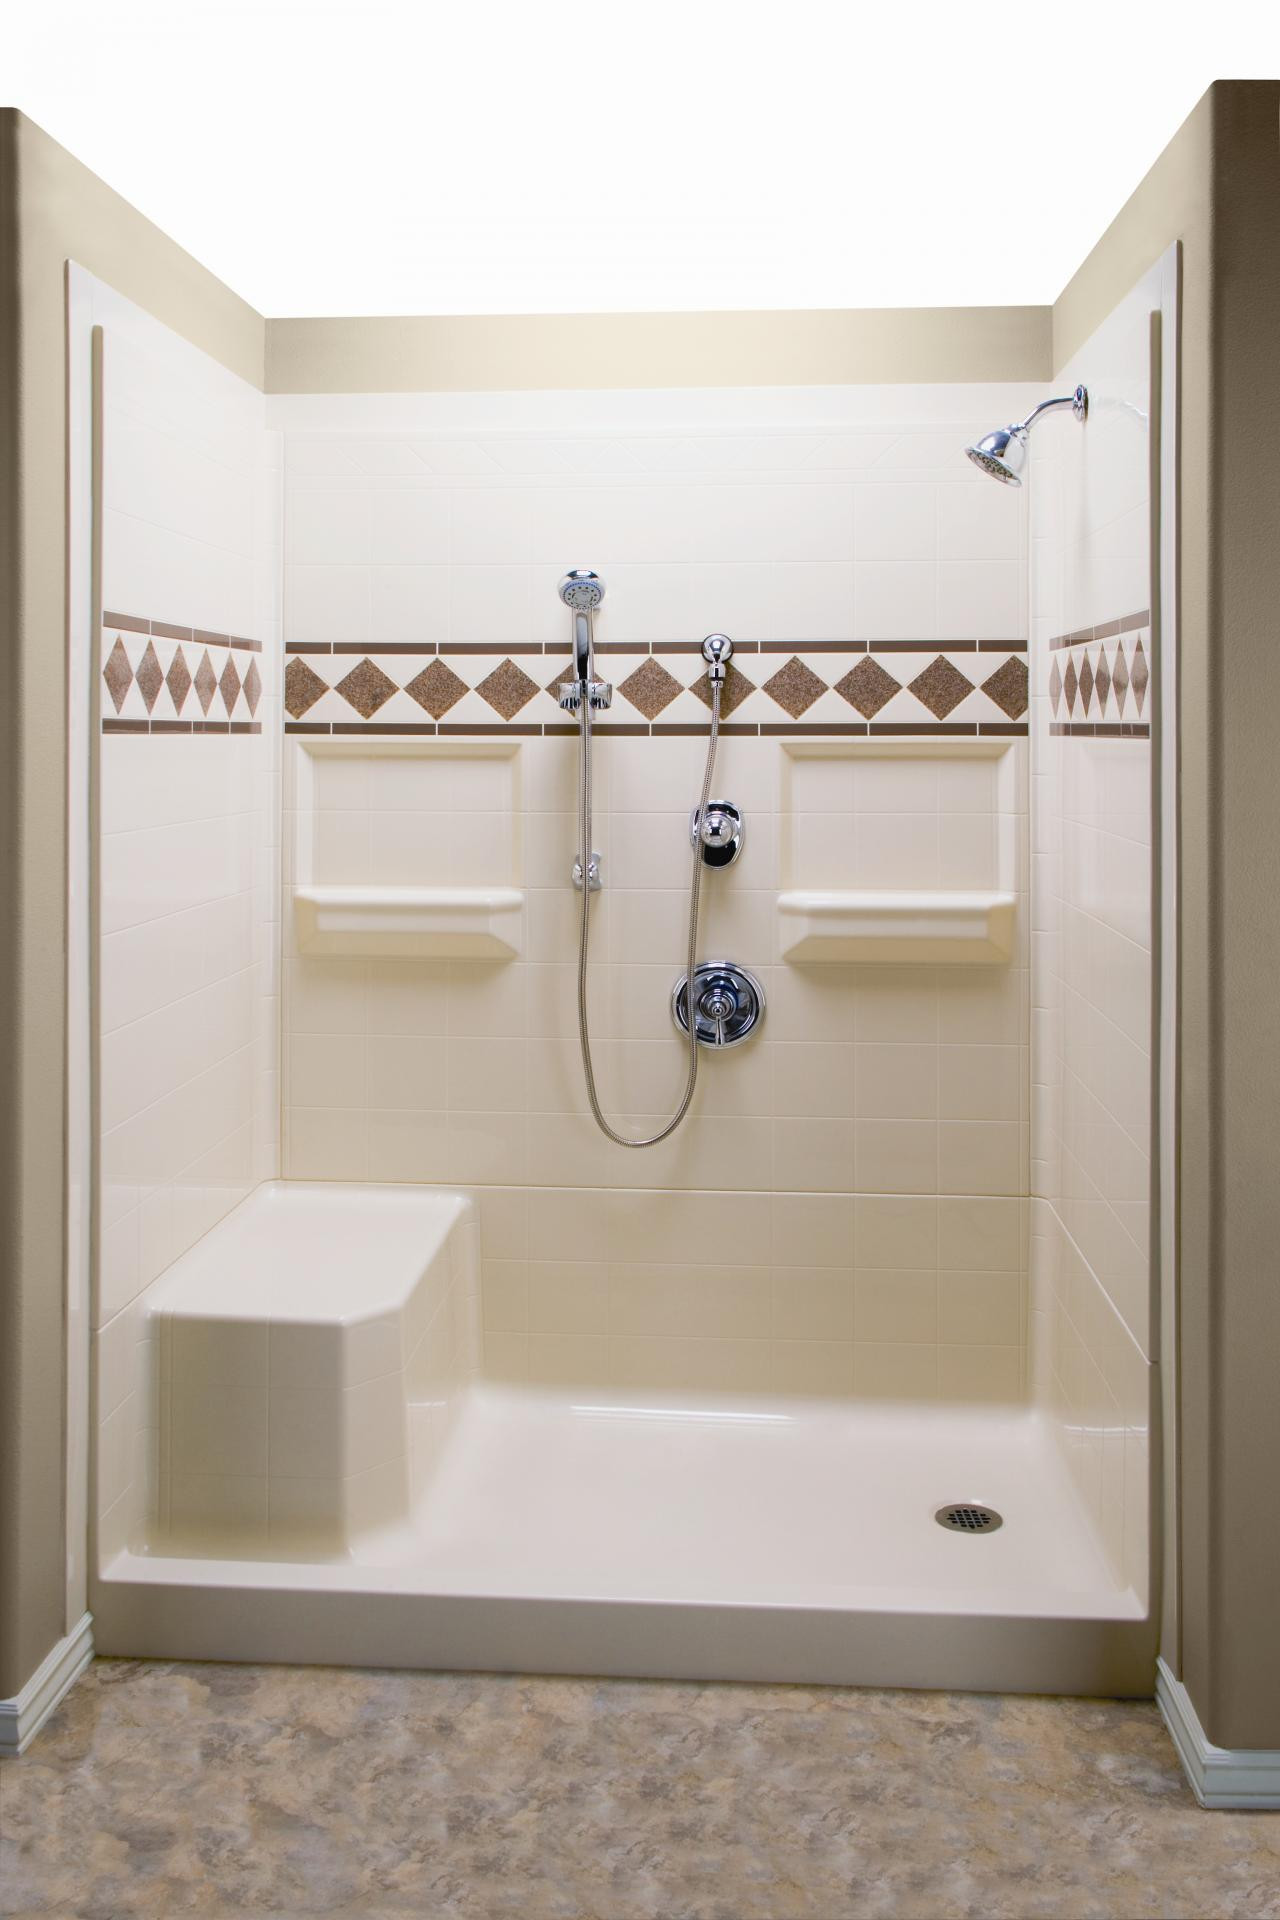 Lowes Bathroom Shower Tile
 Bathroom Marvellous Lowes Shower Tile With Entrancing